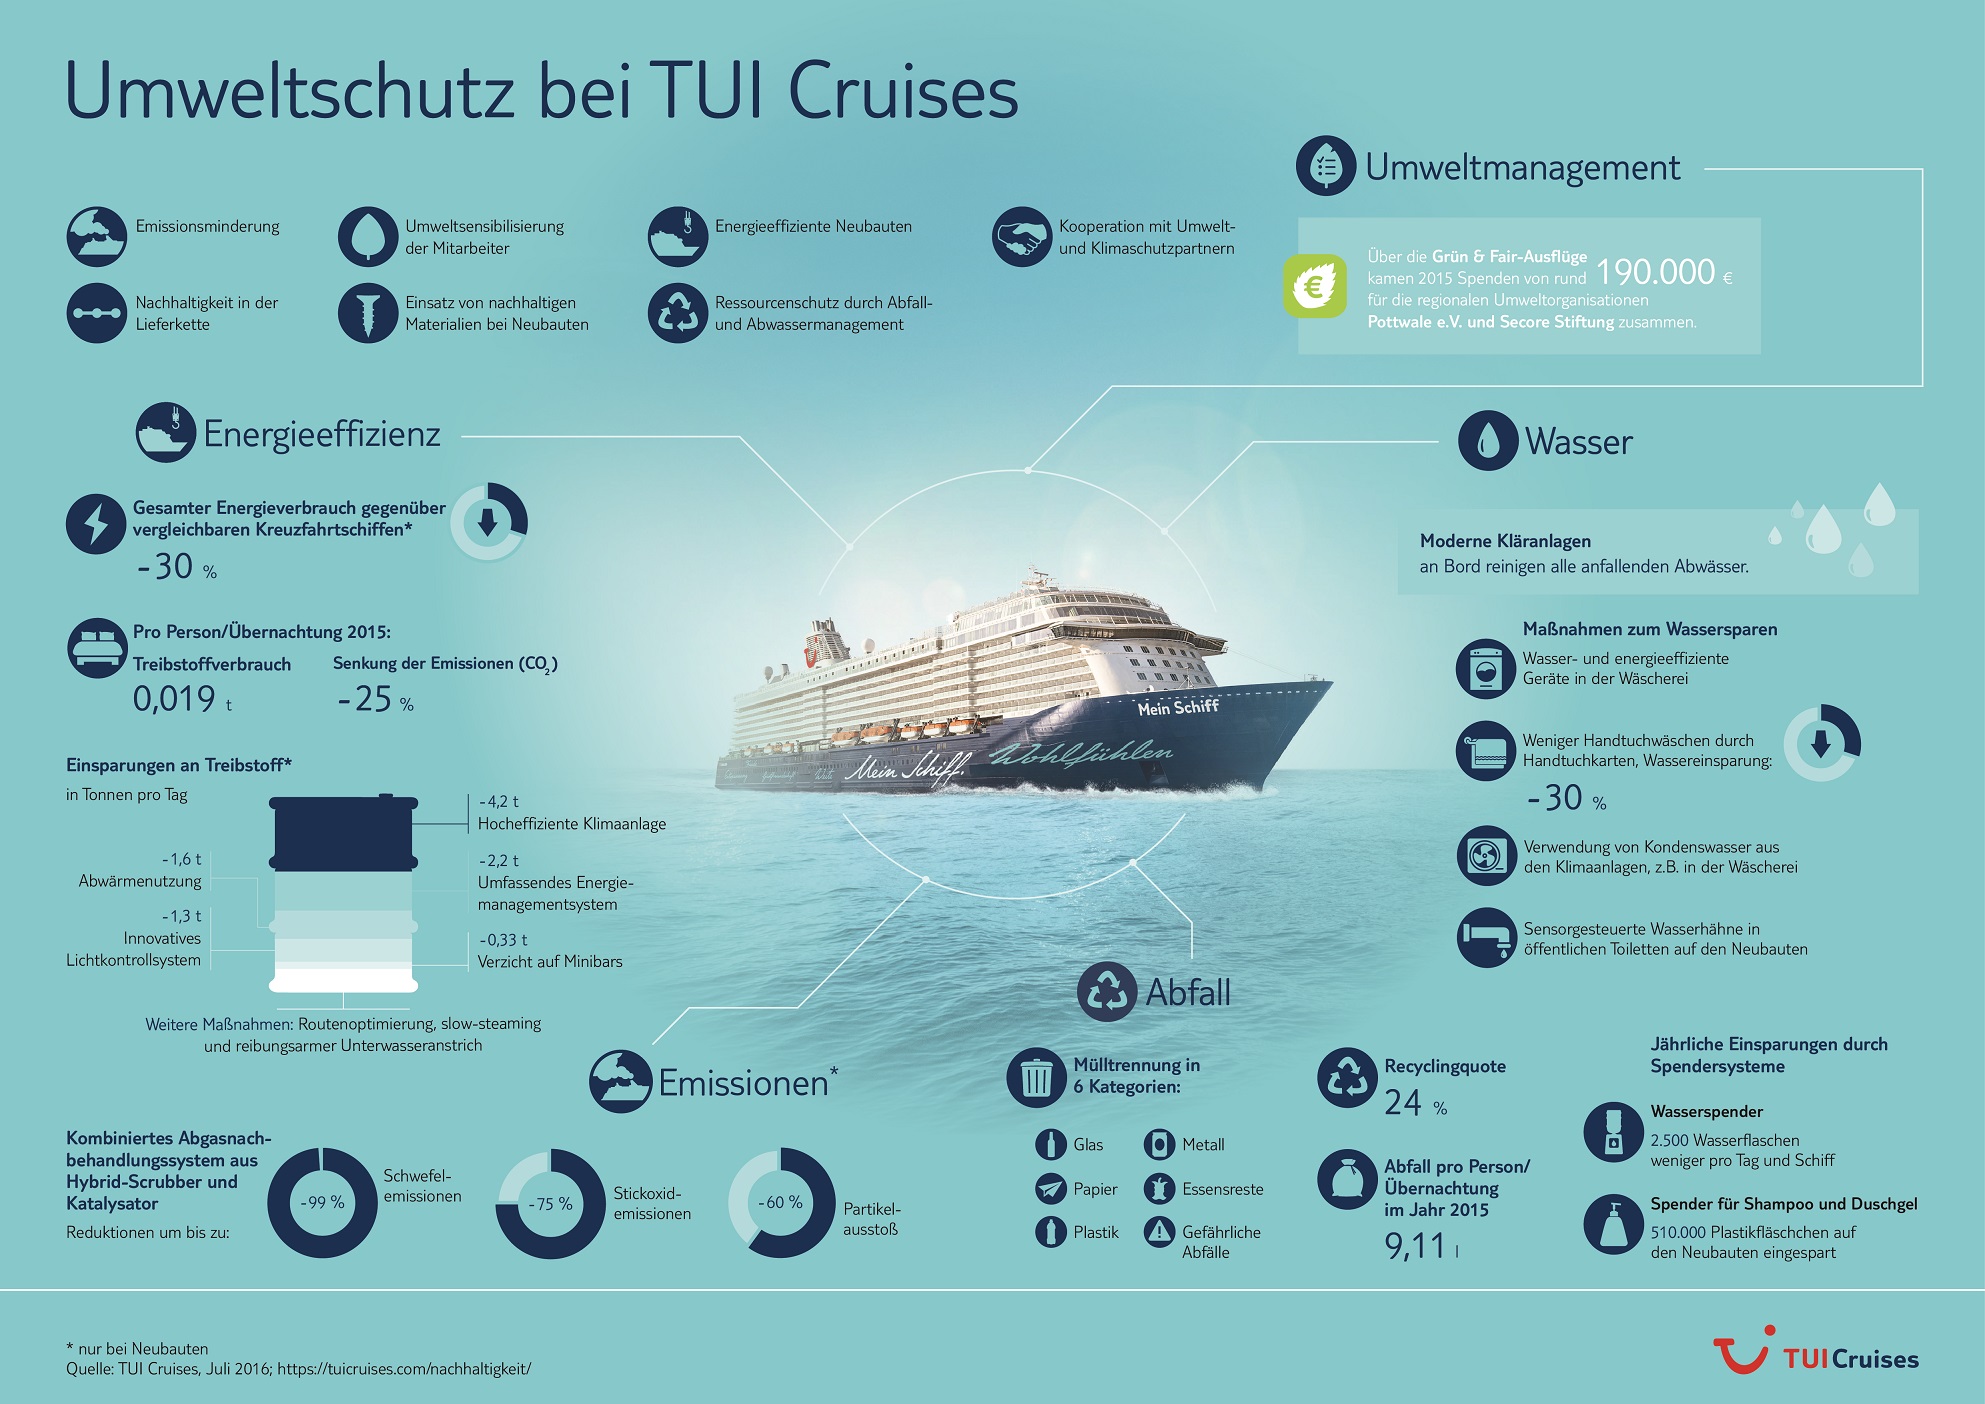 Die Umweltmaßnahmen von TUI Cruises im Überblick